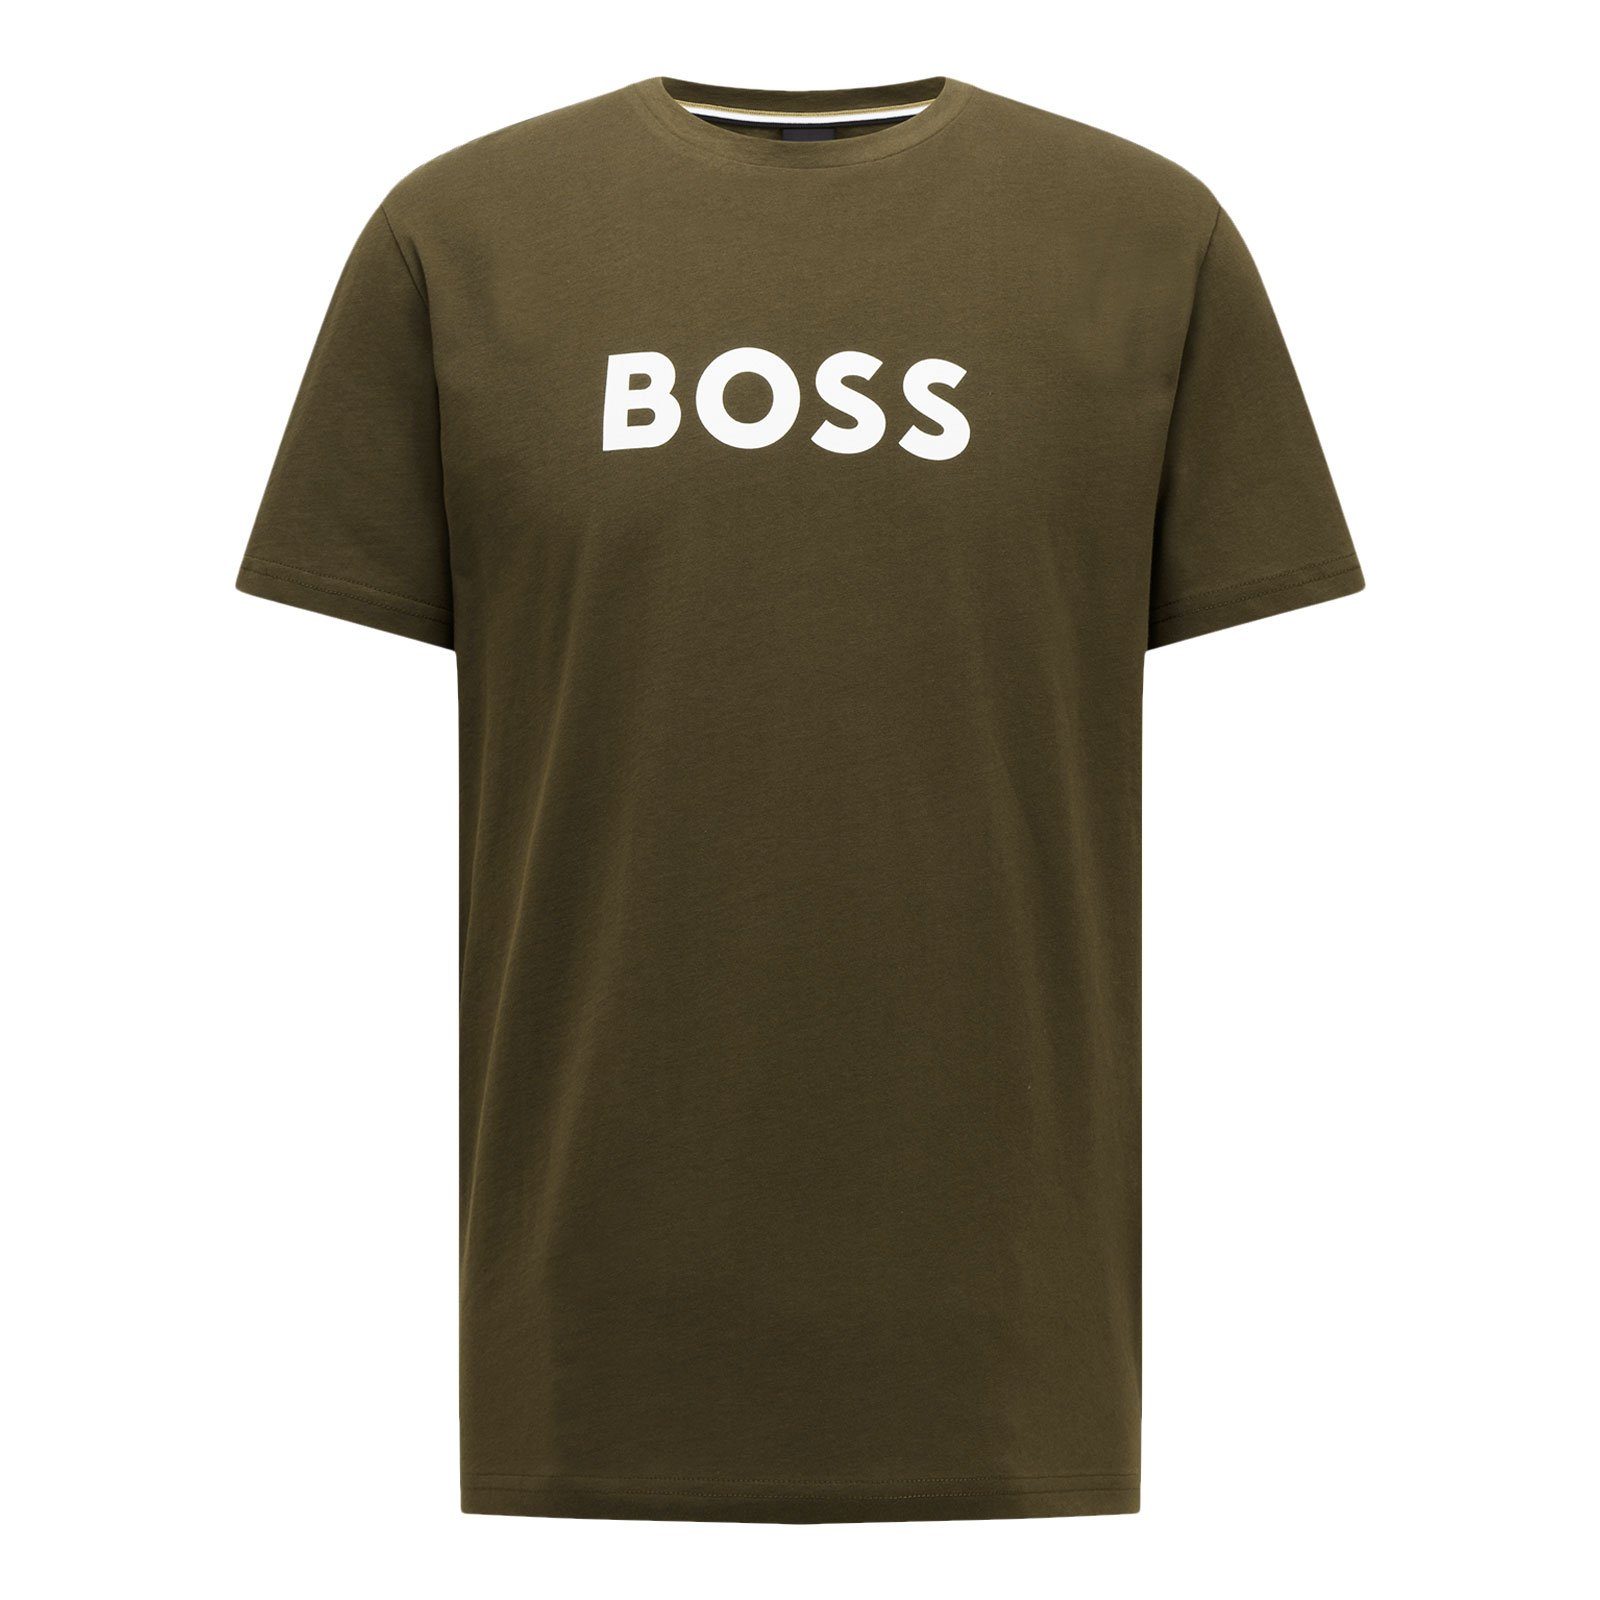 großem green dark mit T-Shirt der Protection auf Sun Markenprint Brust 308 BOSS RN